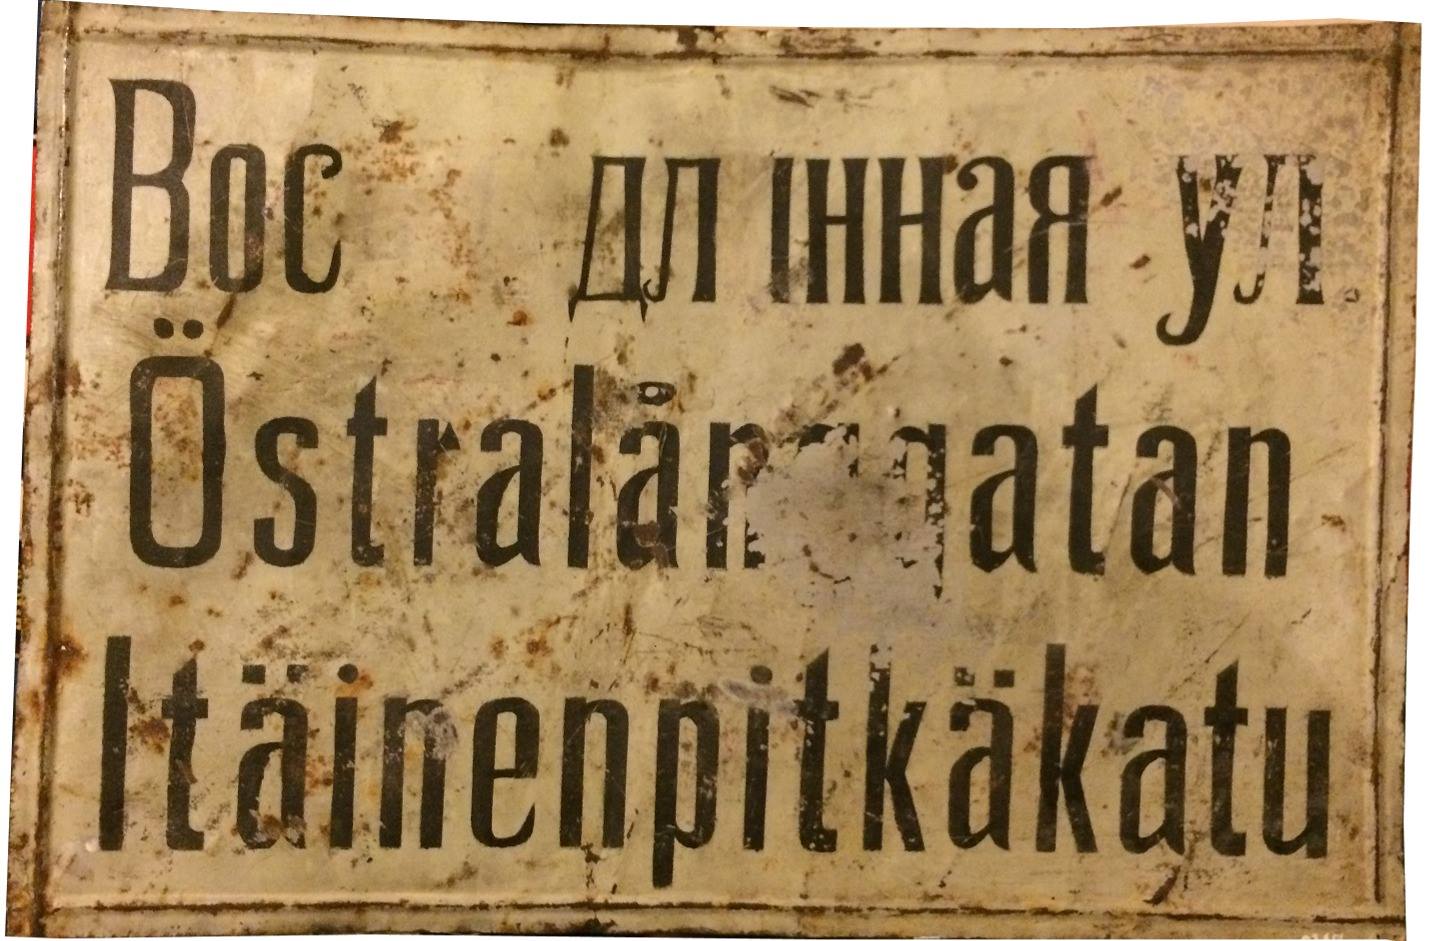 Den 20 februari 1918 beslöt stadsfullmäktige i Kristinestad att gatuskyltarna med den ryska texten skulle målas om, användande endast de inhemska språken.